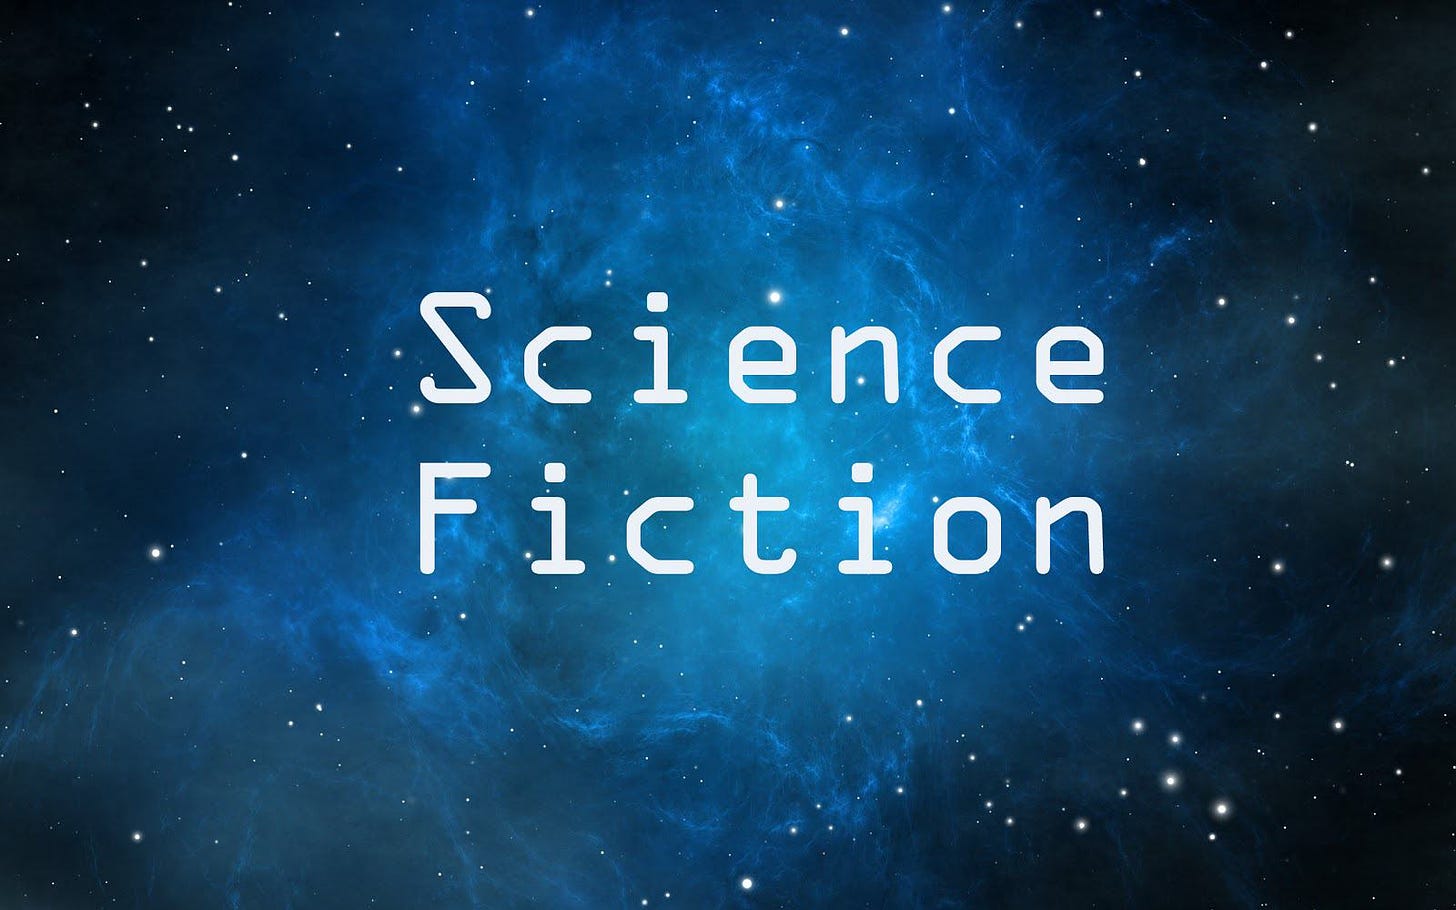 Science Fiction Short Essay